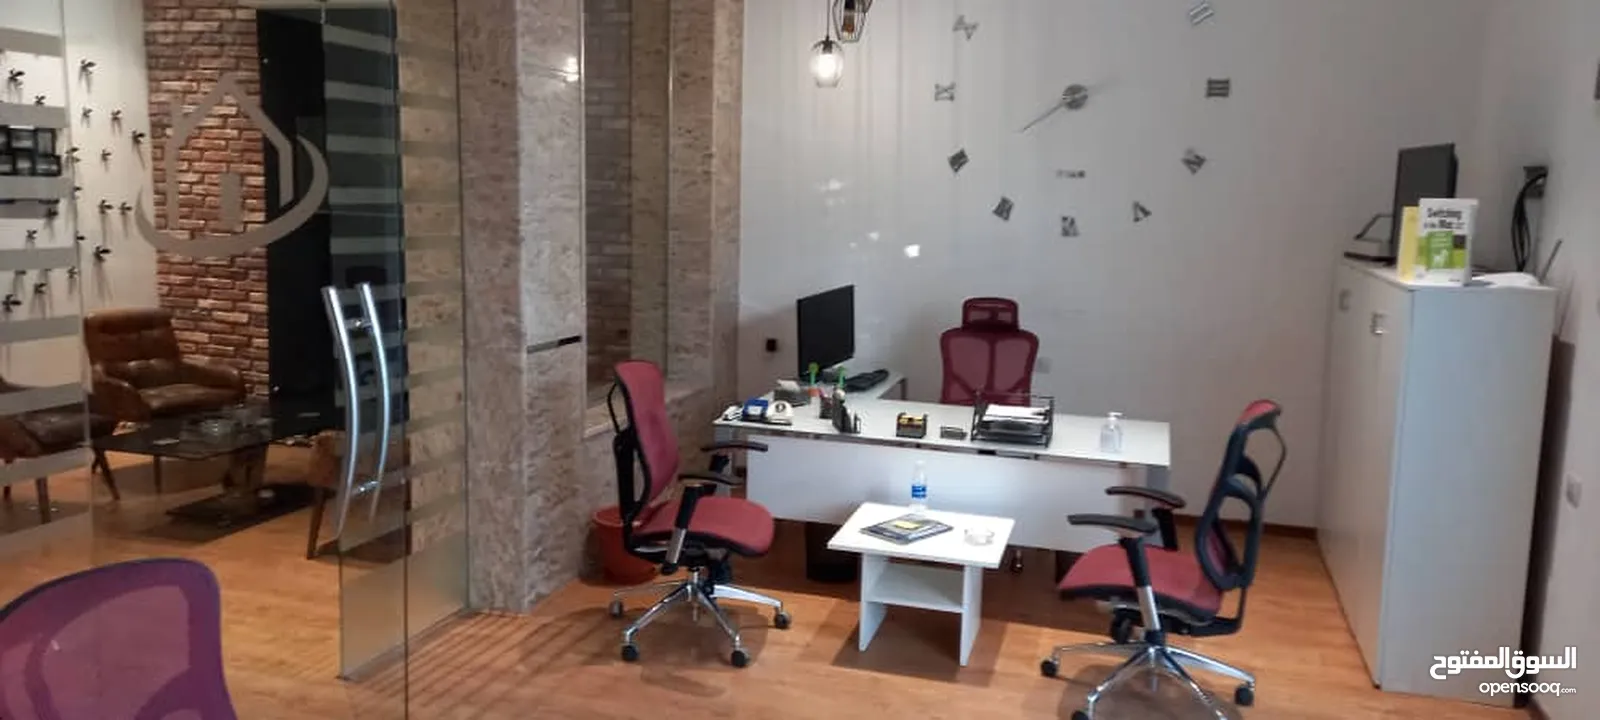 مكتب مجهز بالكامل للأجر في دقادوستة مع مطبخ و حمام و اثاث مكتبي